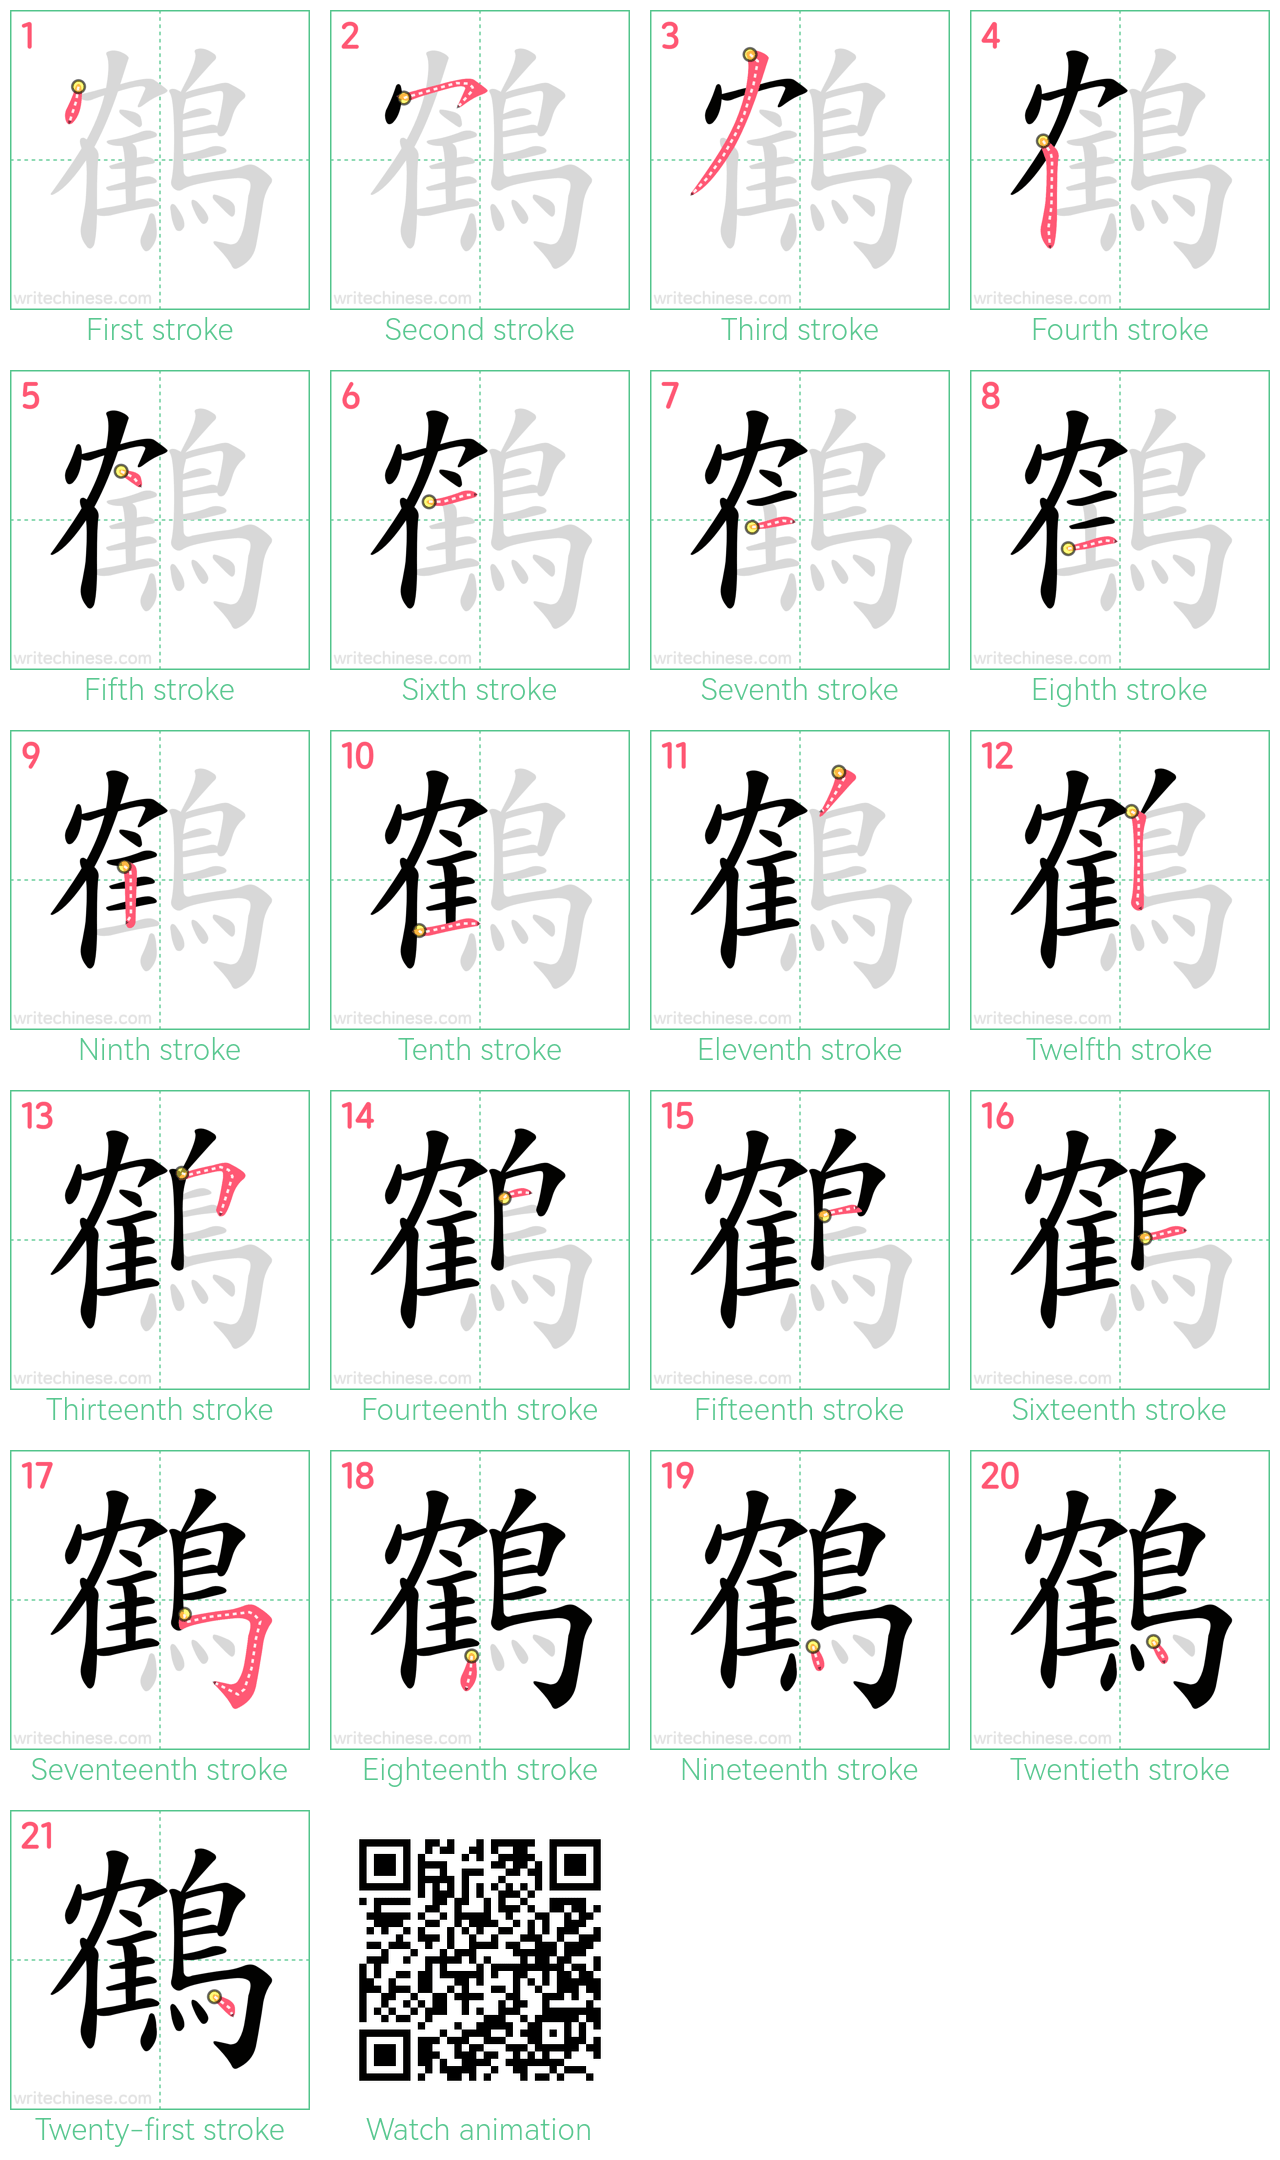 鶴 step-by-step stroke order diagrams